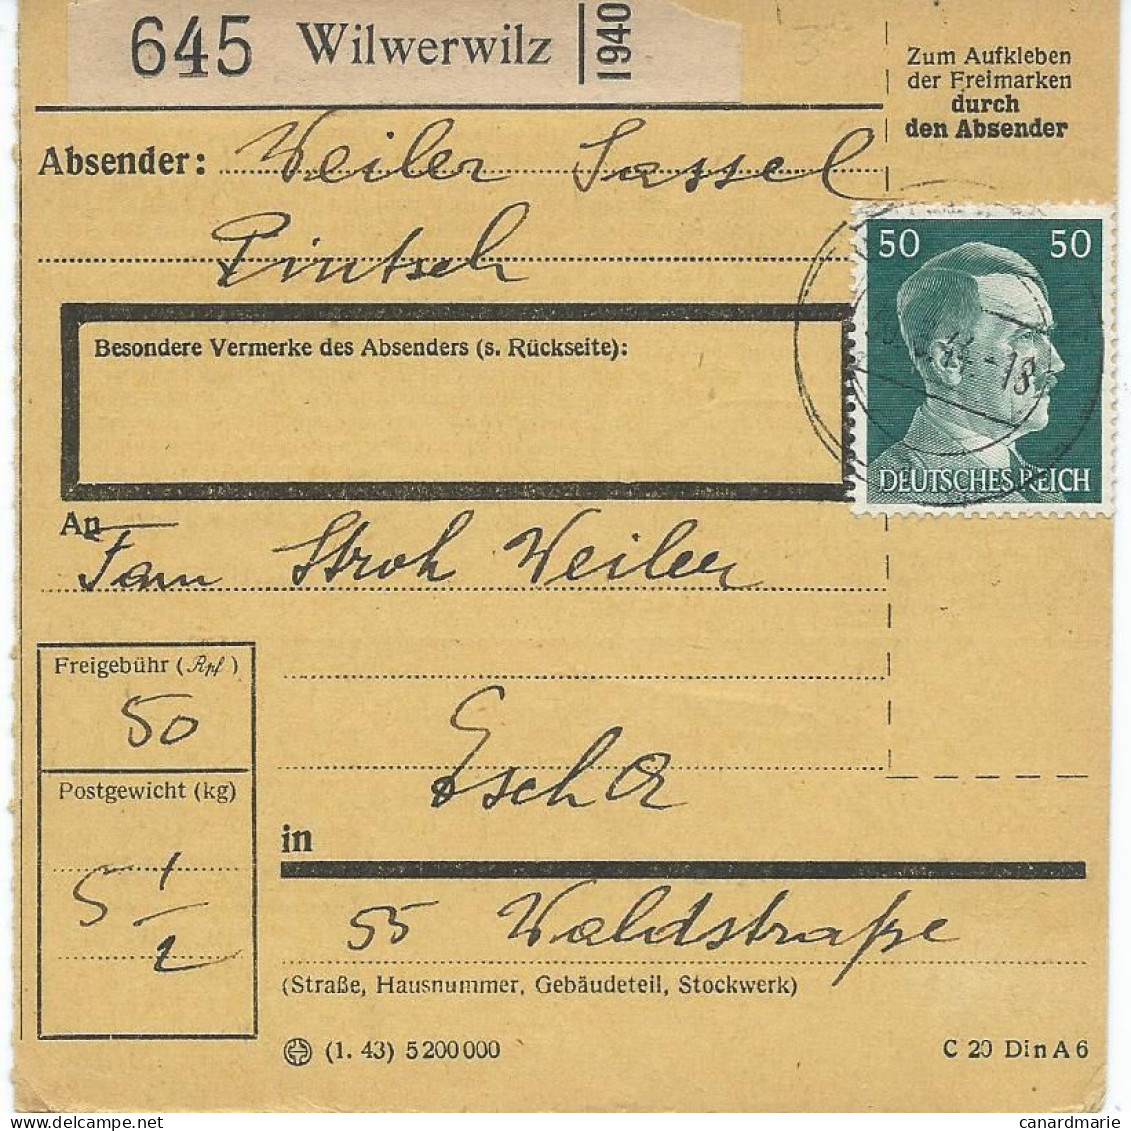 BULLETIN DE COLIS POSTAL 1944 AVEC ETIQUETTE DE WILWERWILZ - 1940-1944 German Occupation